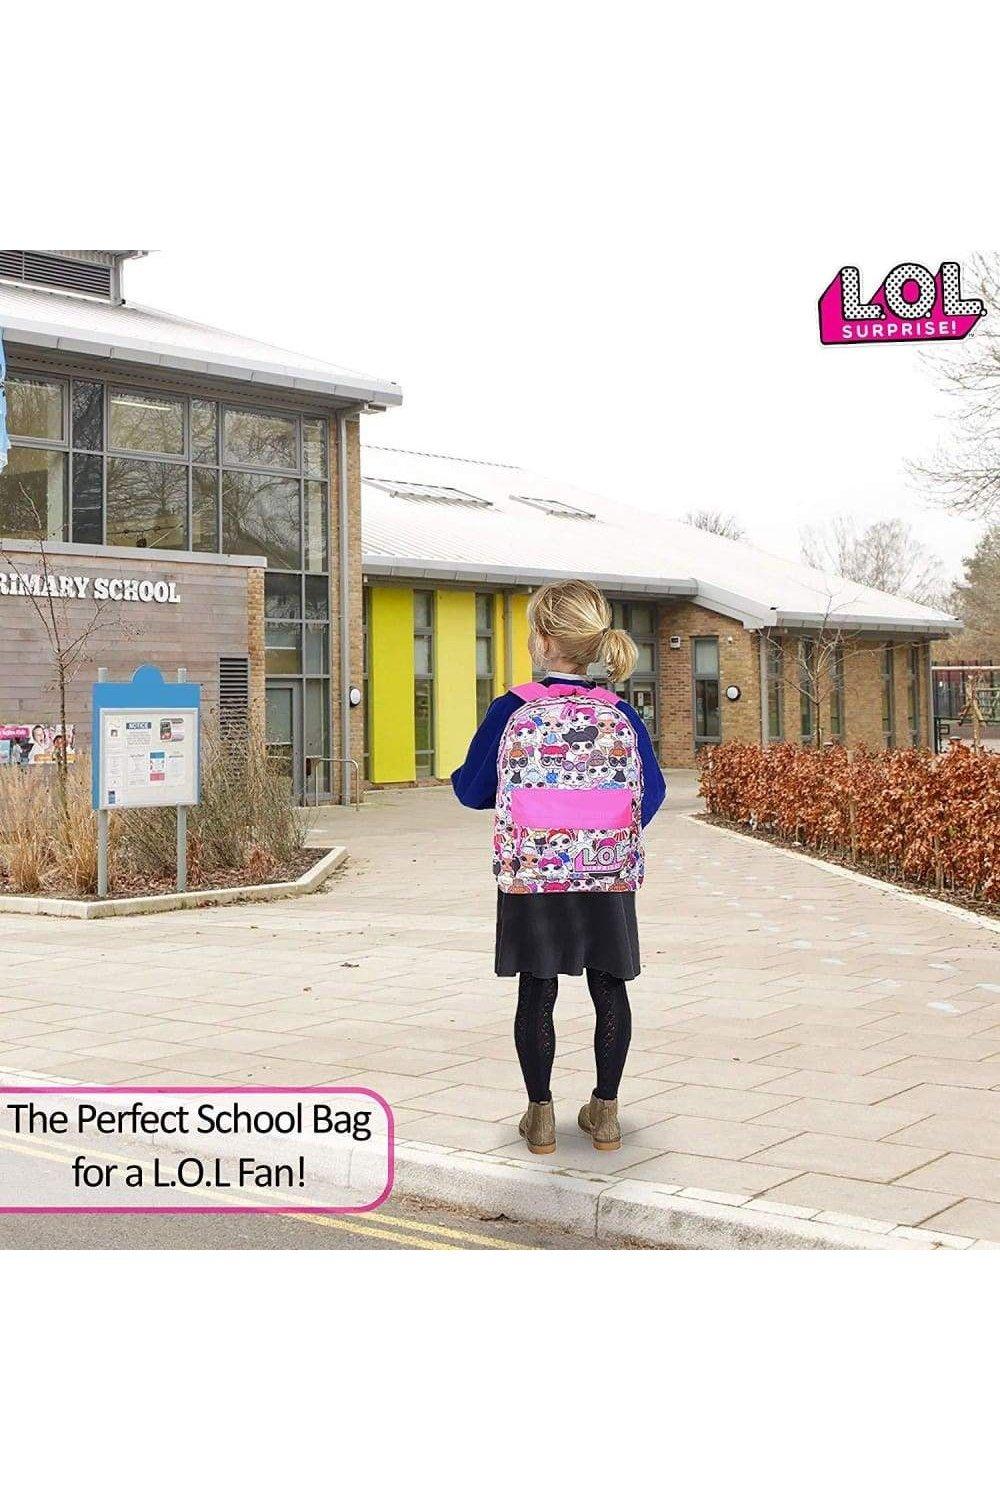 Школьный рюкзак с принтом кукол по всей поверхности L.O.L. Surprise, розовый холщовый рюкзак на шнурке модный школьный рюкзак повседневный рюкзак на шнурке школьный рюкзак для девочек подростков